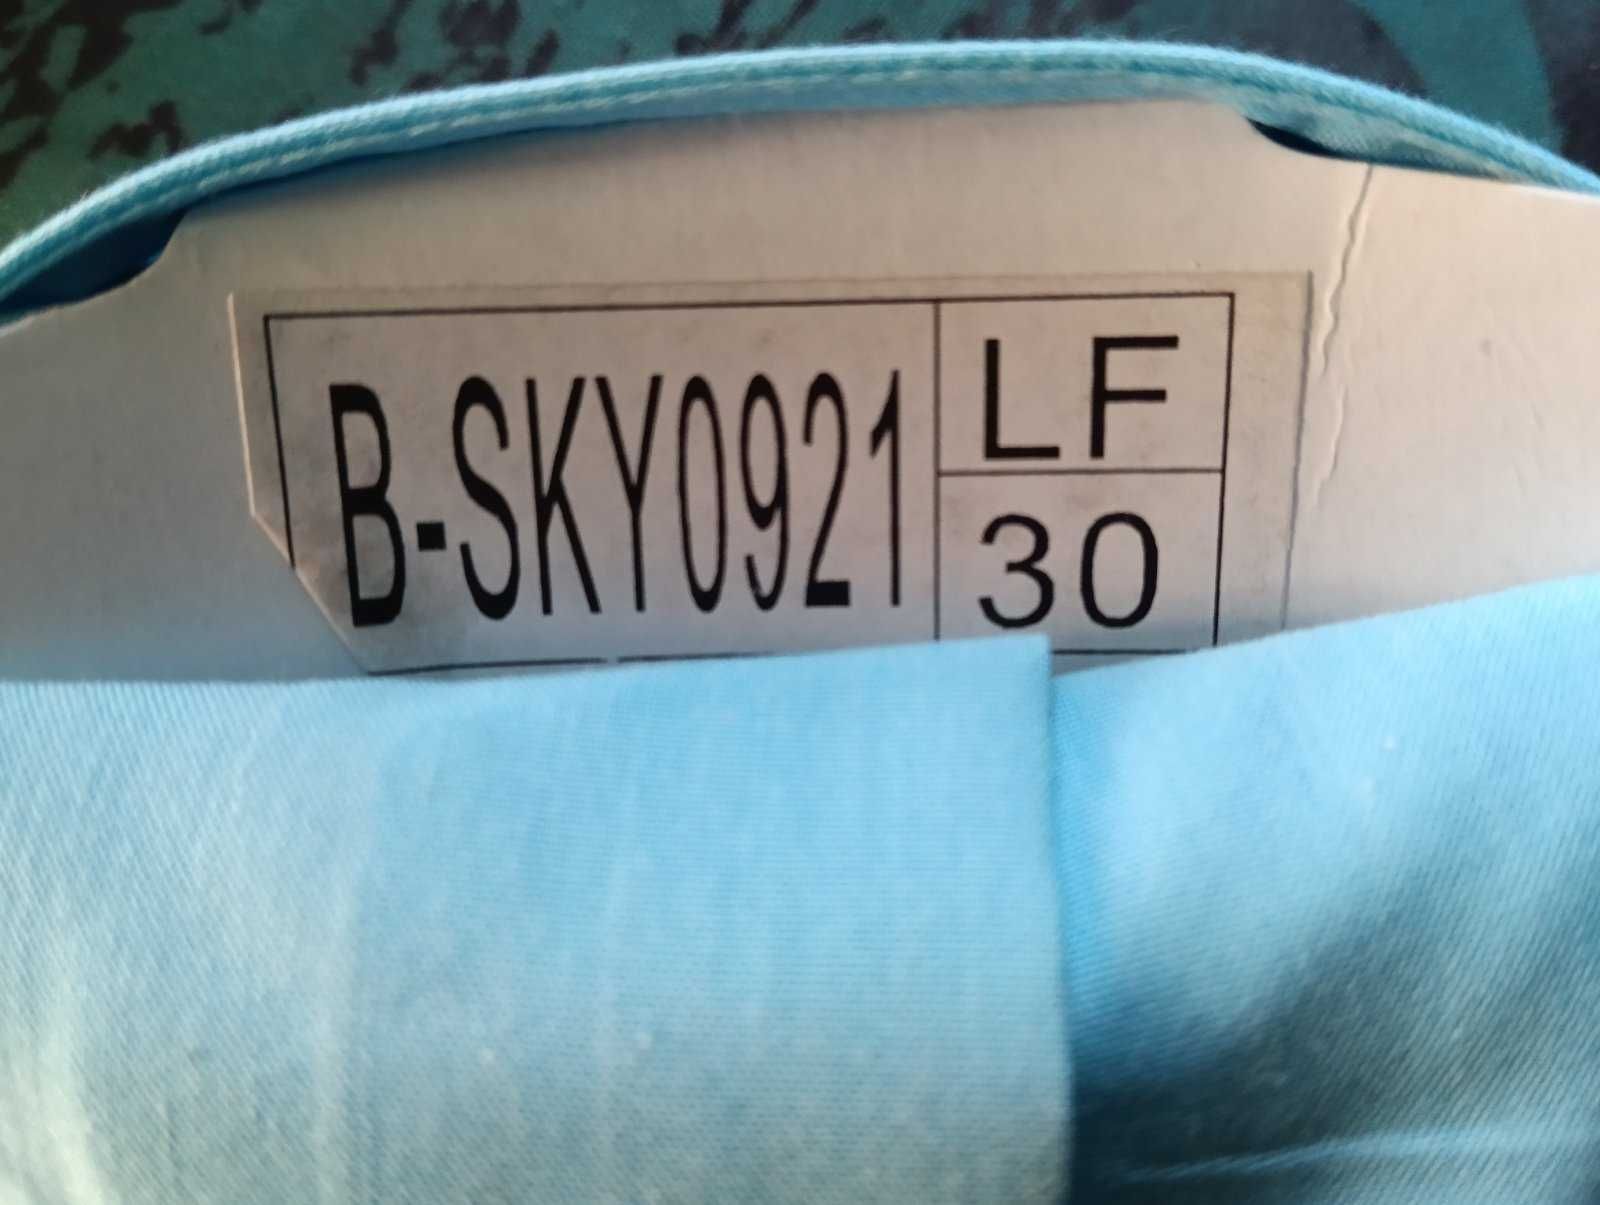 Рубашка Lagard для мальчика с длинным рукавом, р.LF30,в.30,р.LF31 в.31